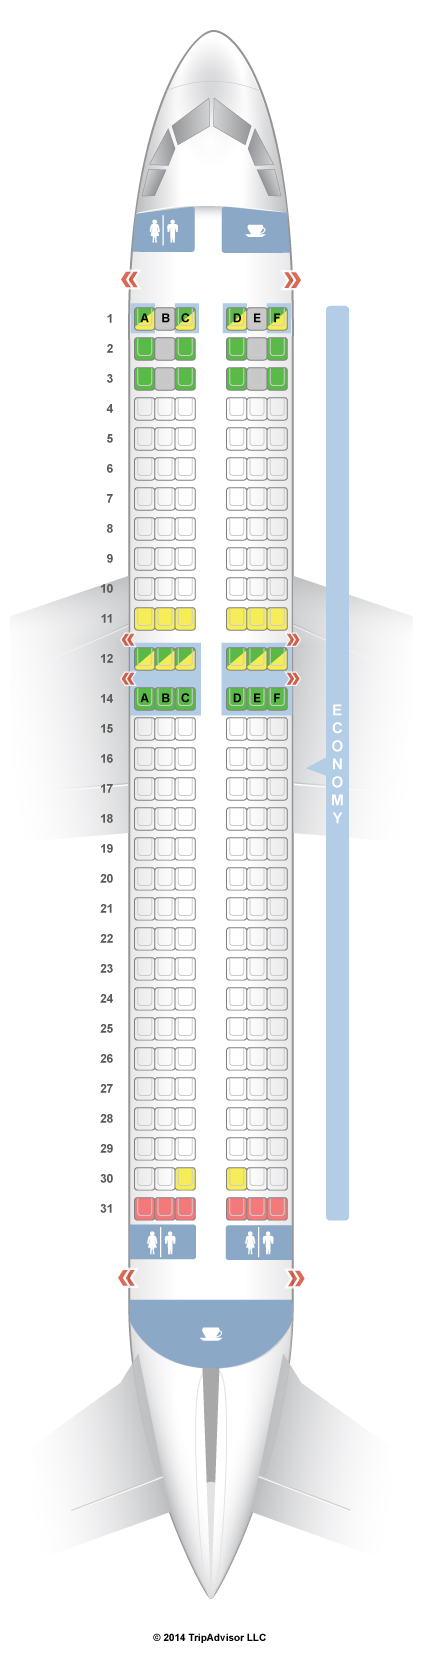 La Compagnie Seating Chart